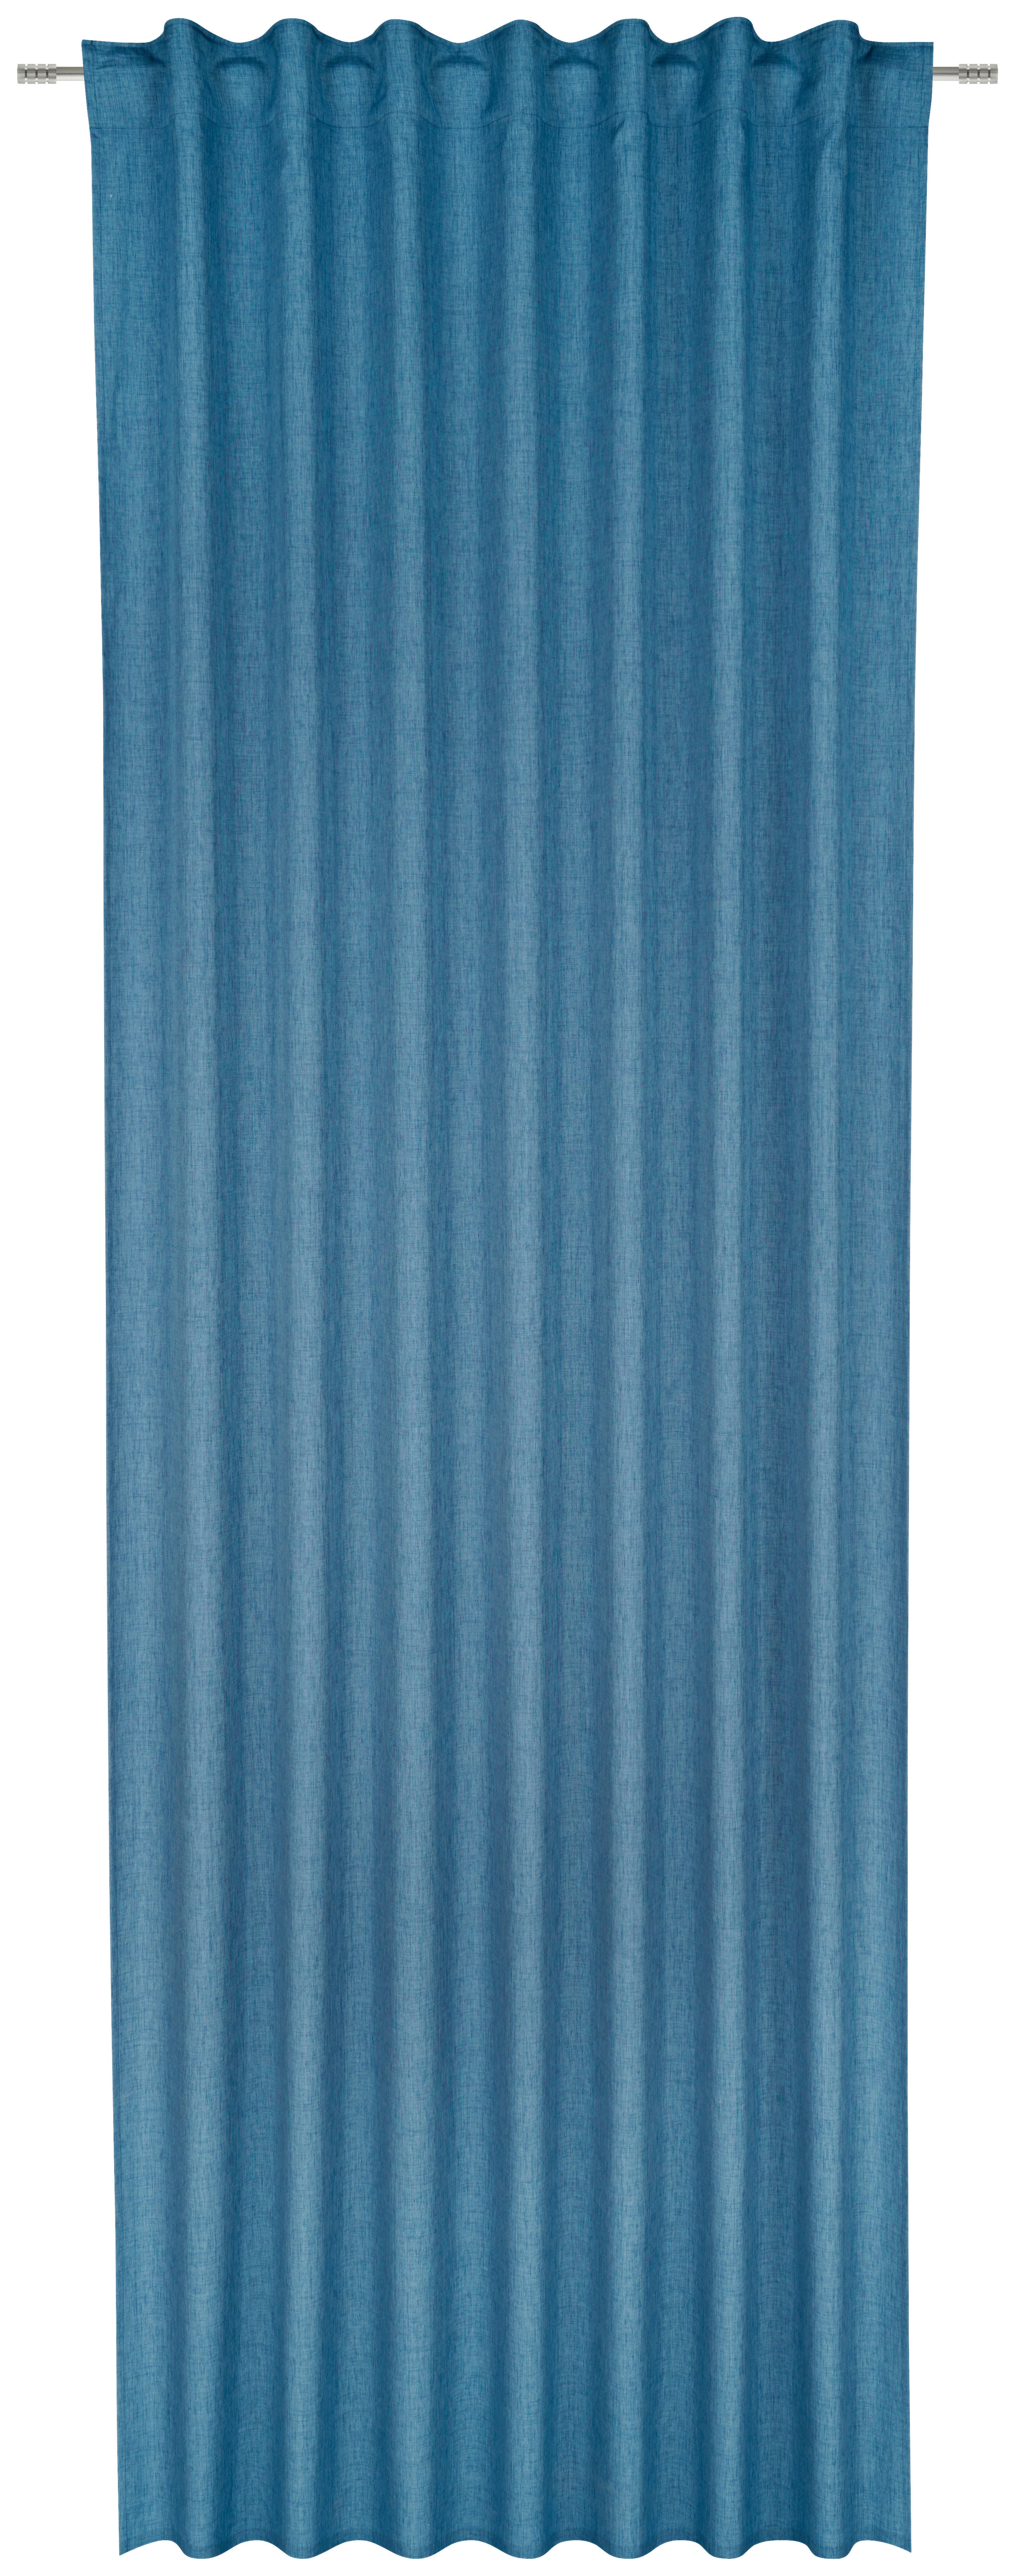 GOTOVA ZAVESA plava - plava, Osnovno, tekstil (140/300cm) - Esposa